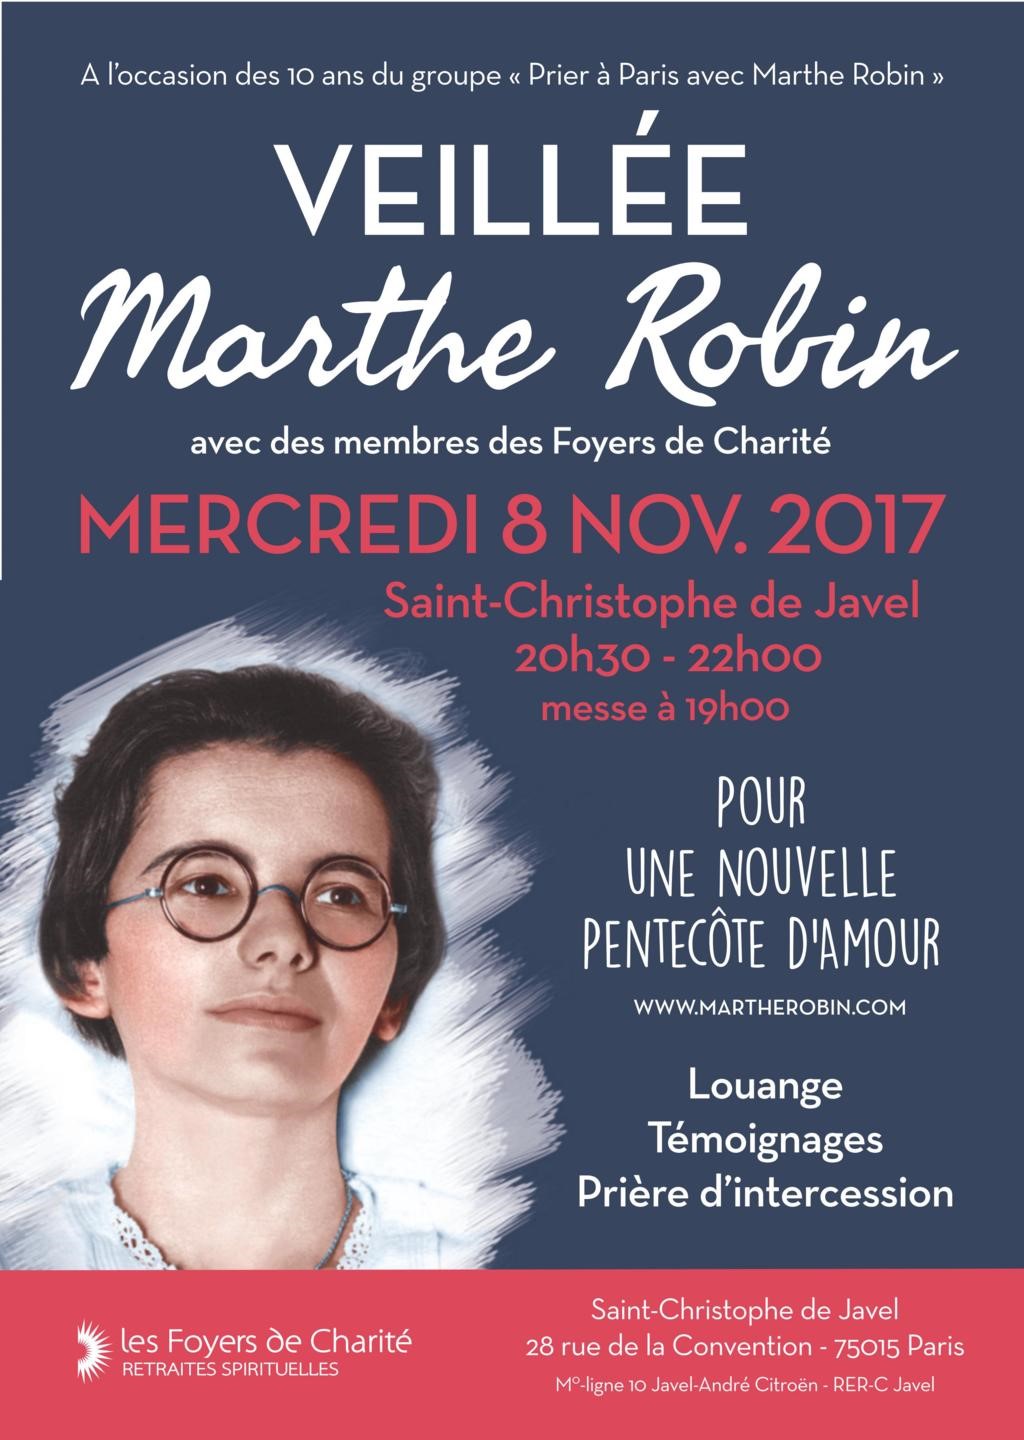 Veillée Marthe Robin avec des membres des Foyers de Charité le 8 novembre à Paris